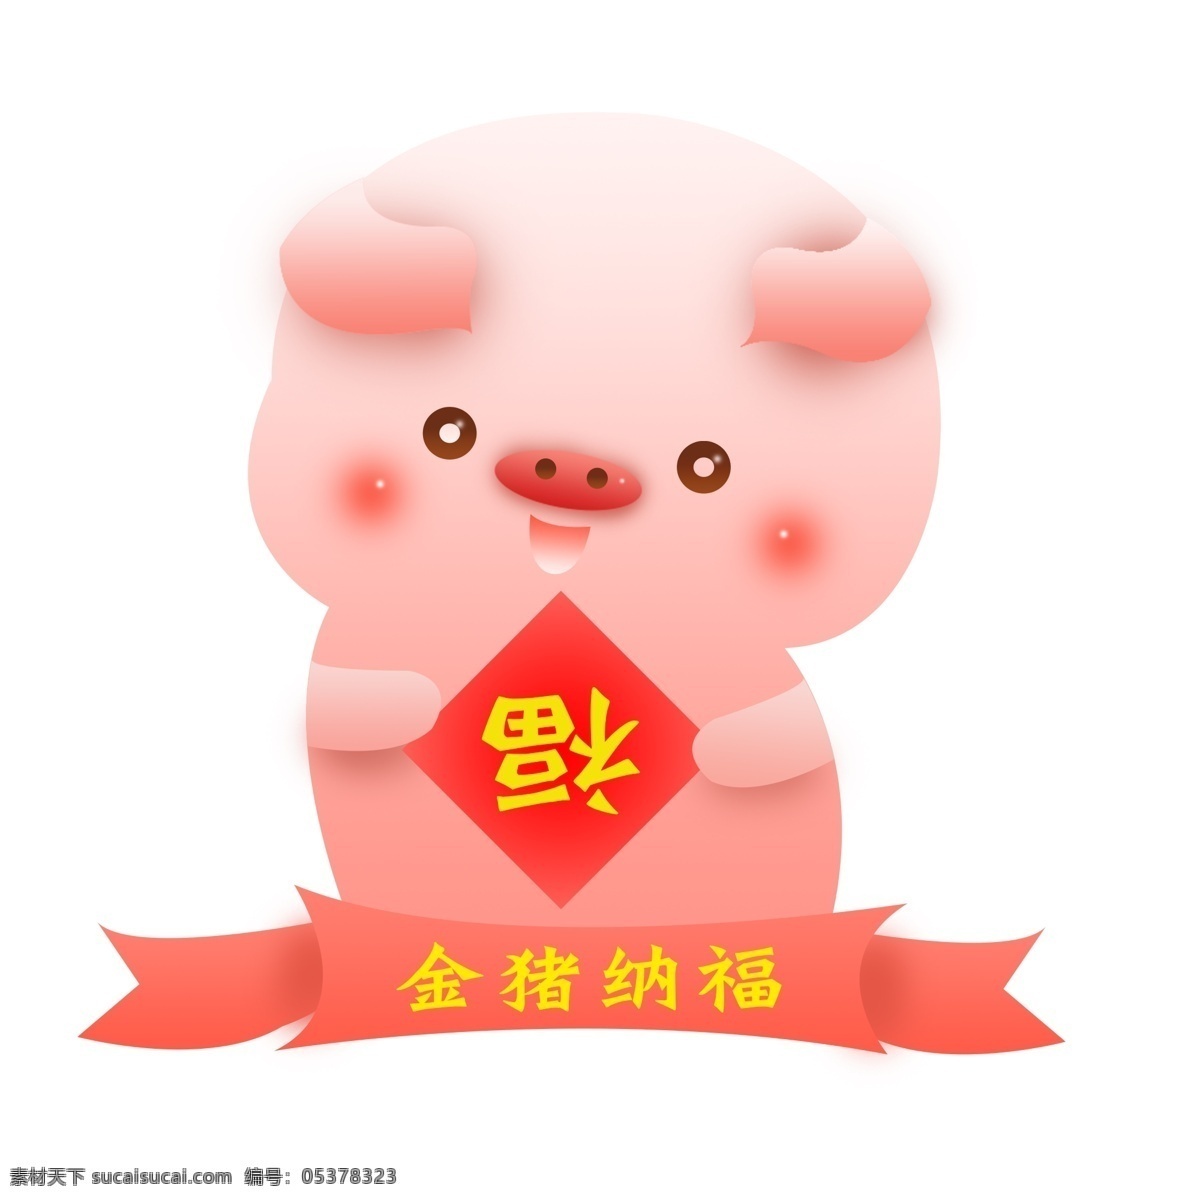 金 猪 纳福 猪年 卡通 形象 商用 元素 ip 金猪纳福 可商用 粉色